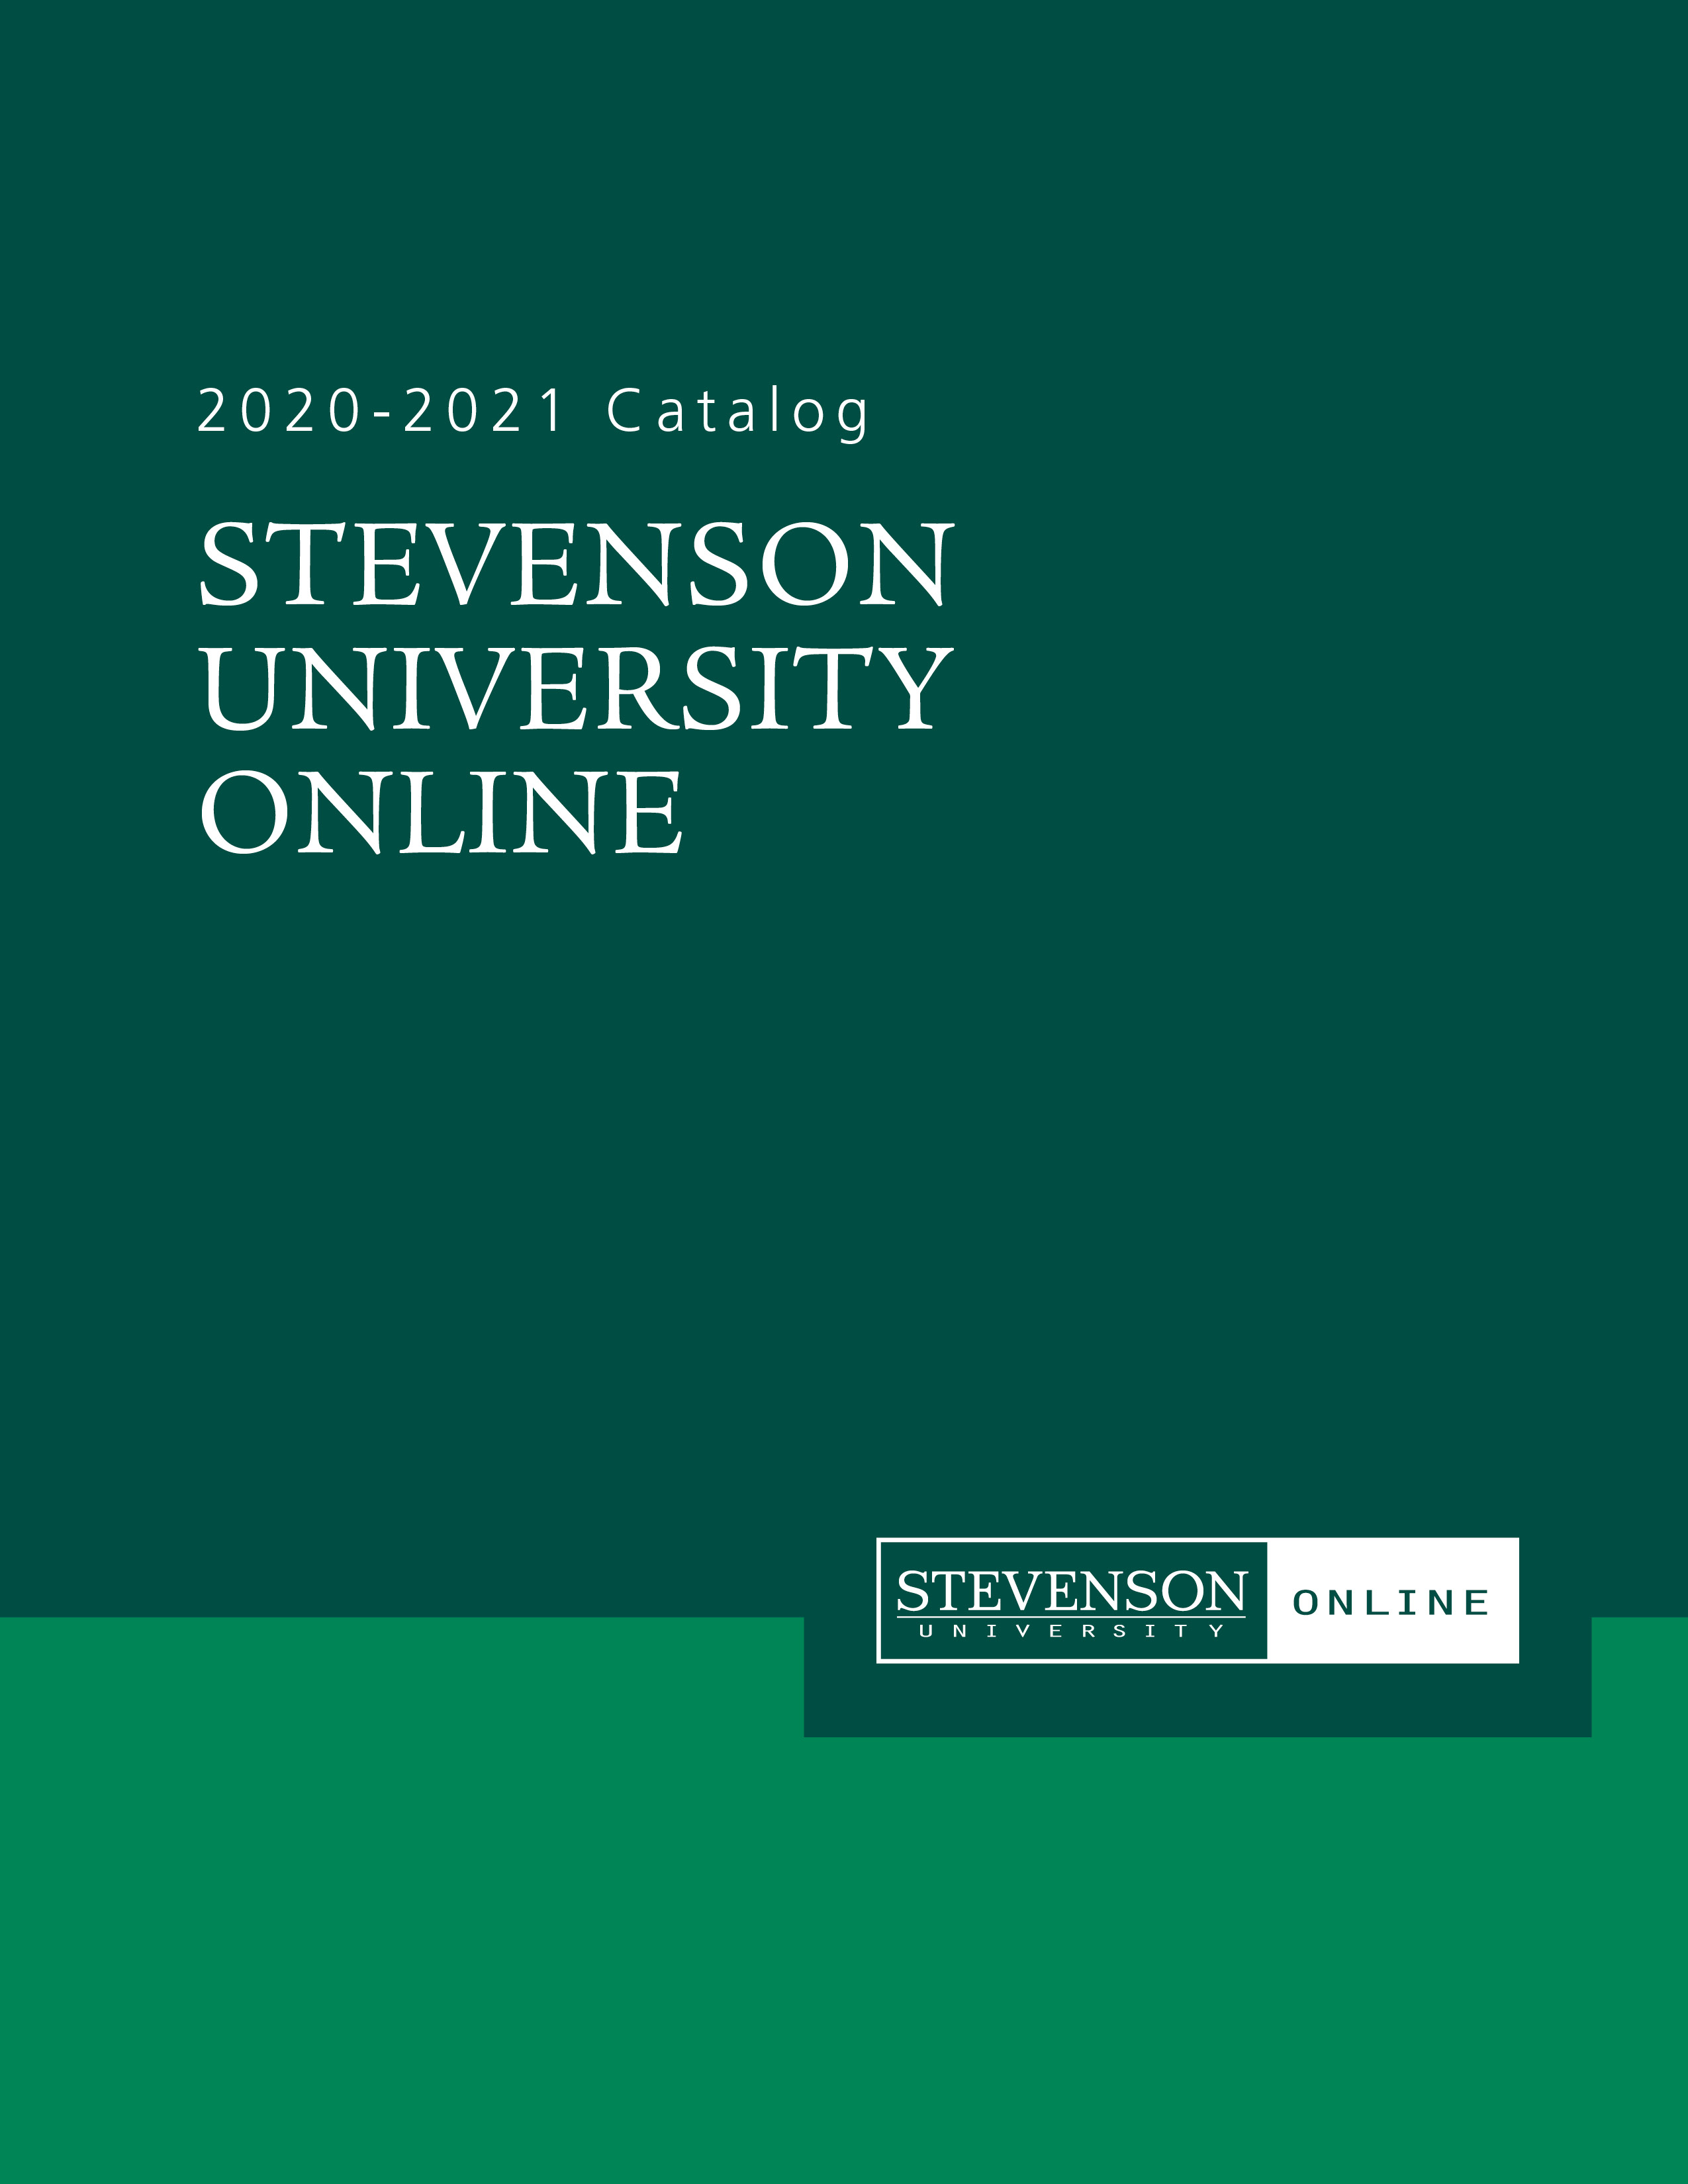 2020-2021 Stevenson University Online Catalog